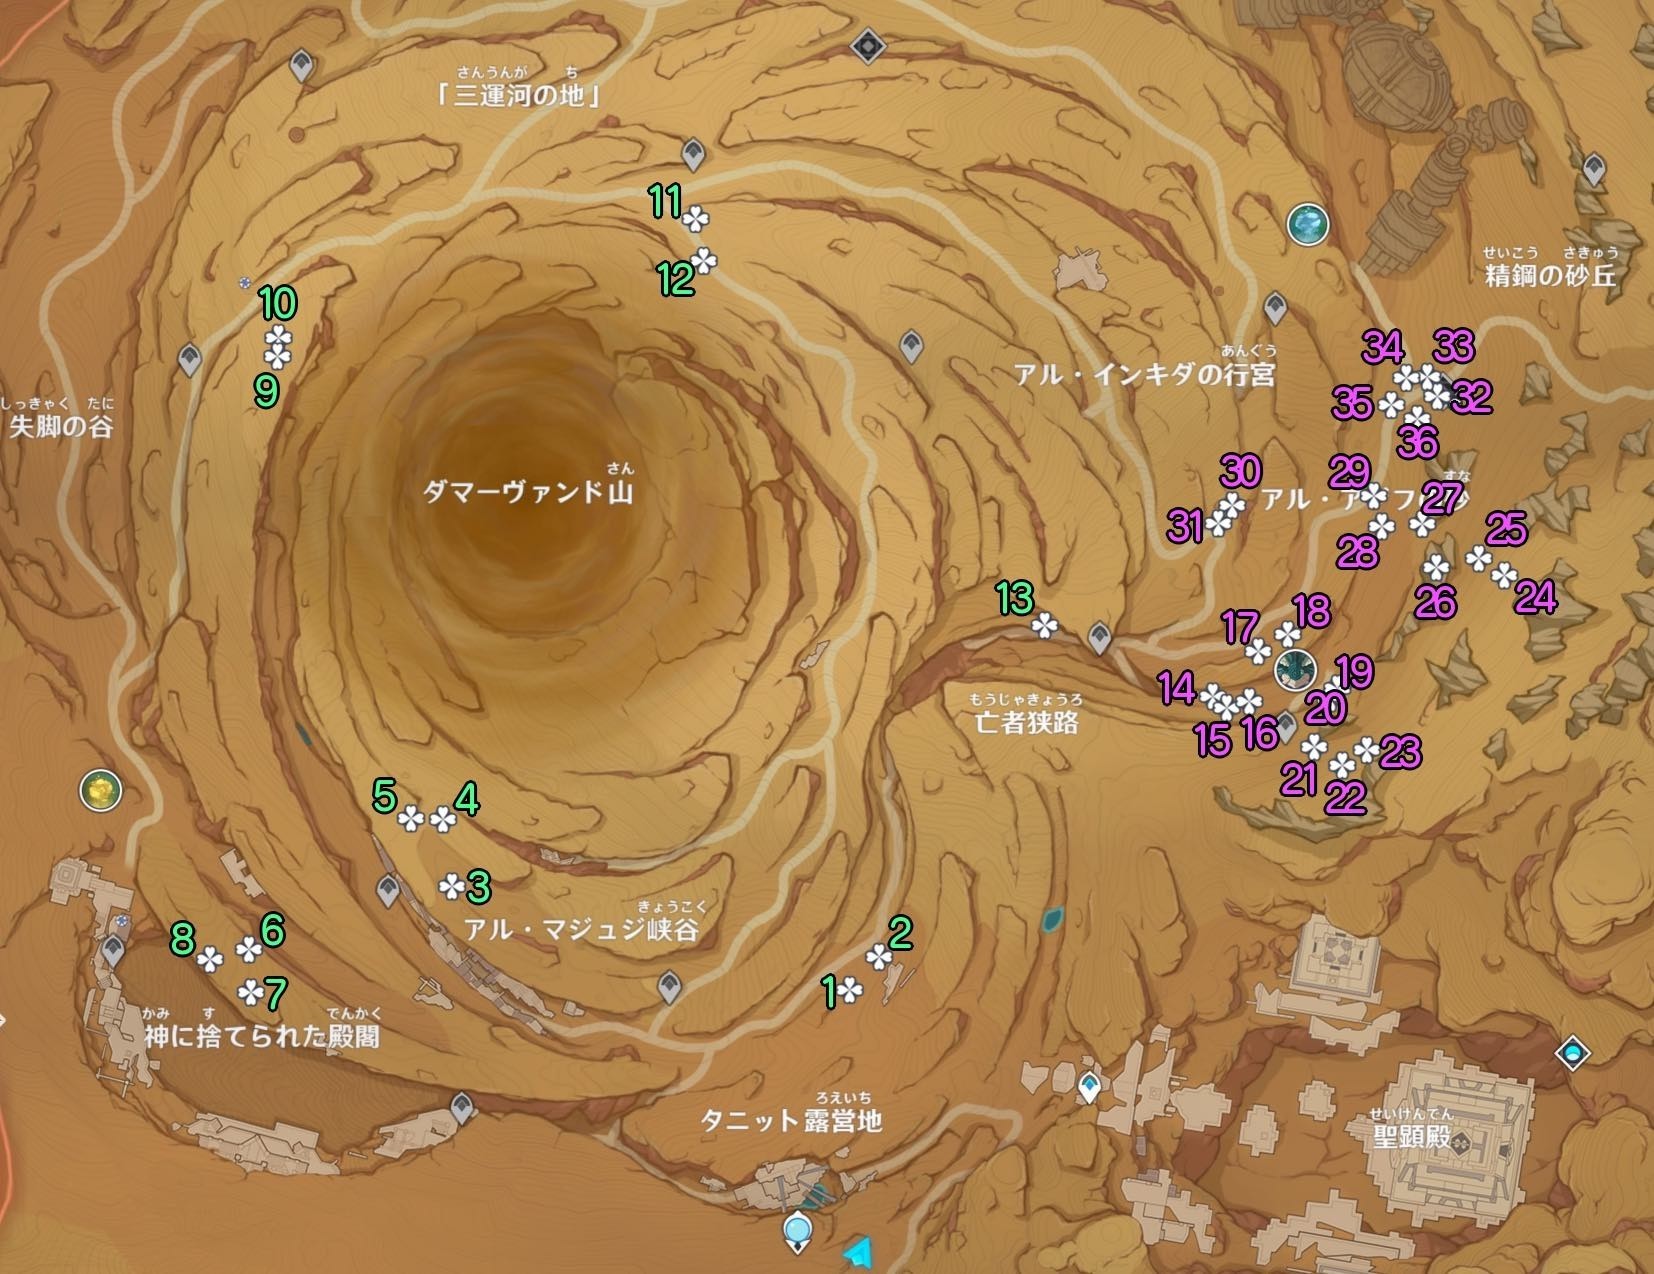 《原神》3.4沙脂蛹收集地圖點位及分佈 沙脂蛹怎麼獲得_地下區域 - 第1張